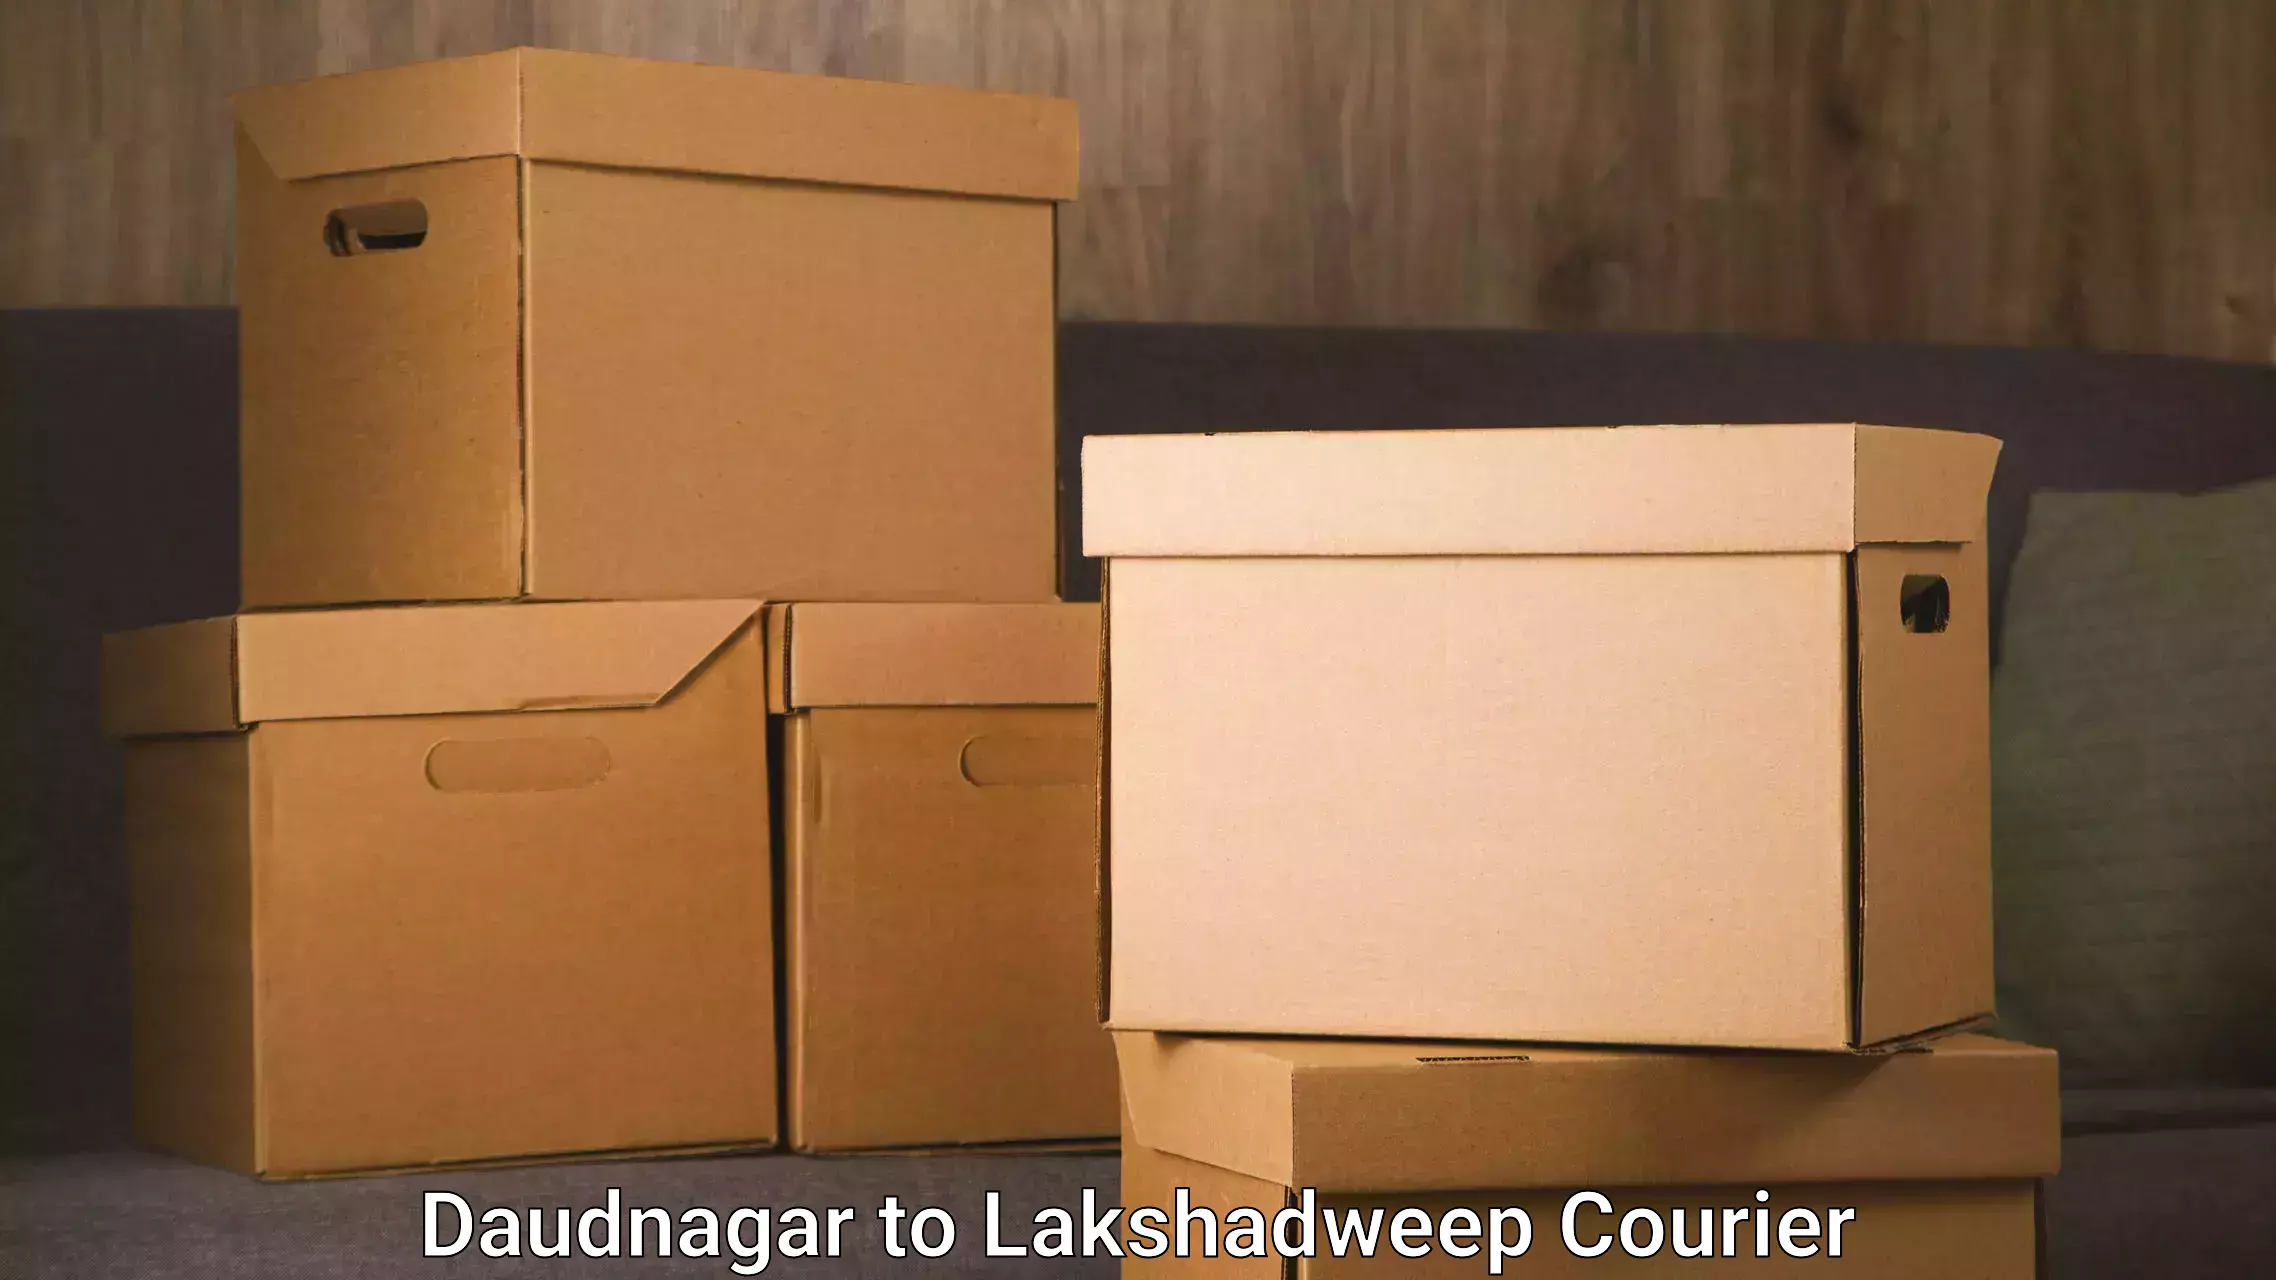 Furniture transport experts Daudnagar to Lakshadweep